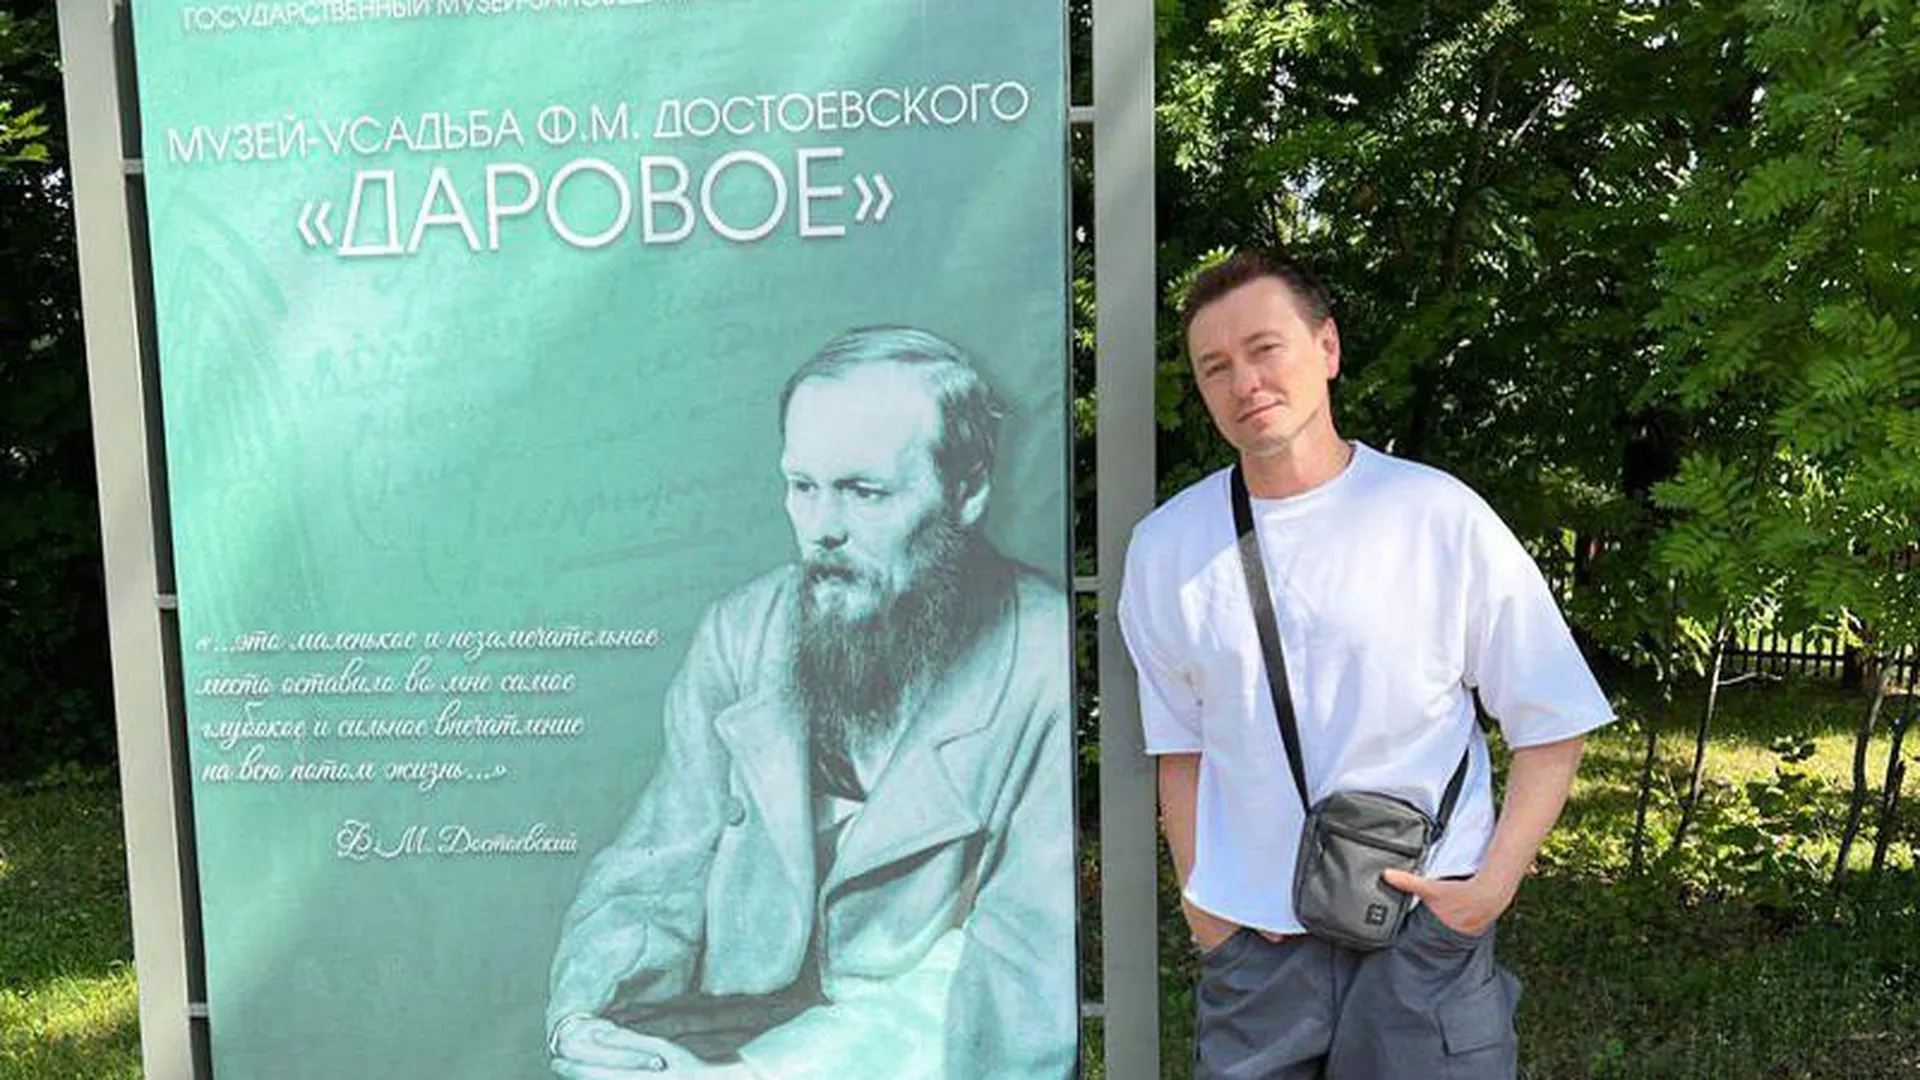 Сергей Безруков похвалил восстановленную усадьбу Достоевского в Даровом